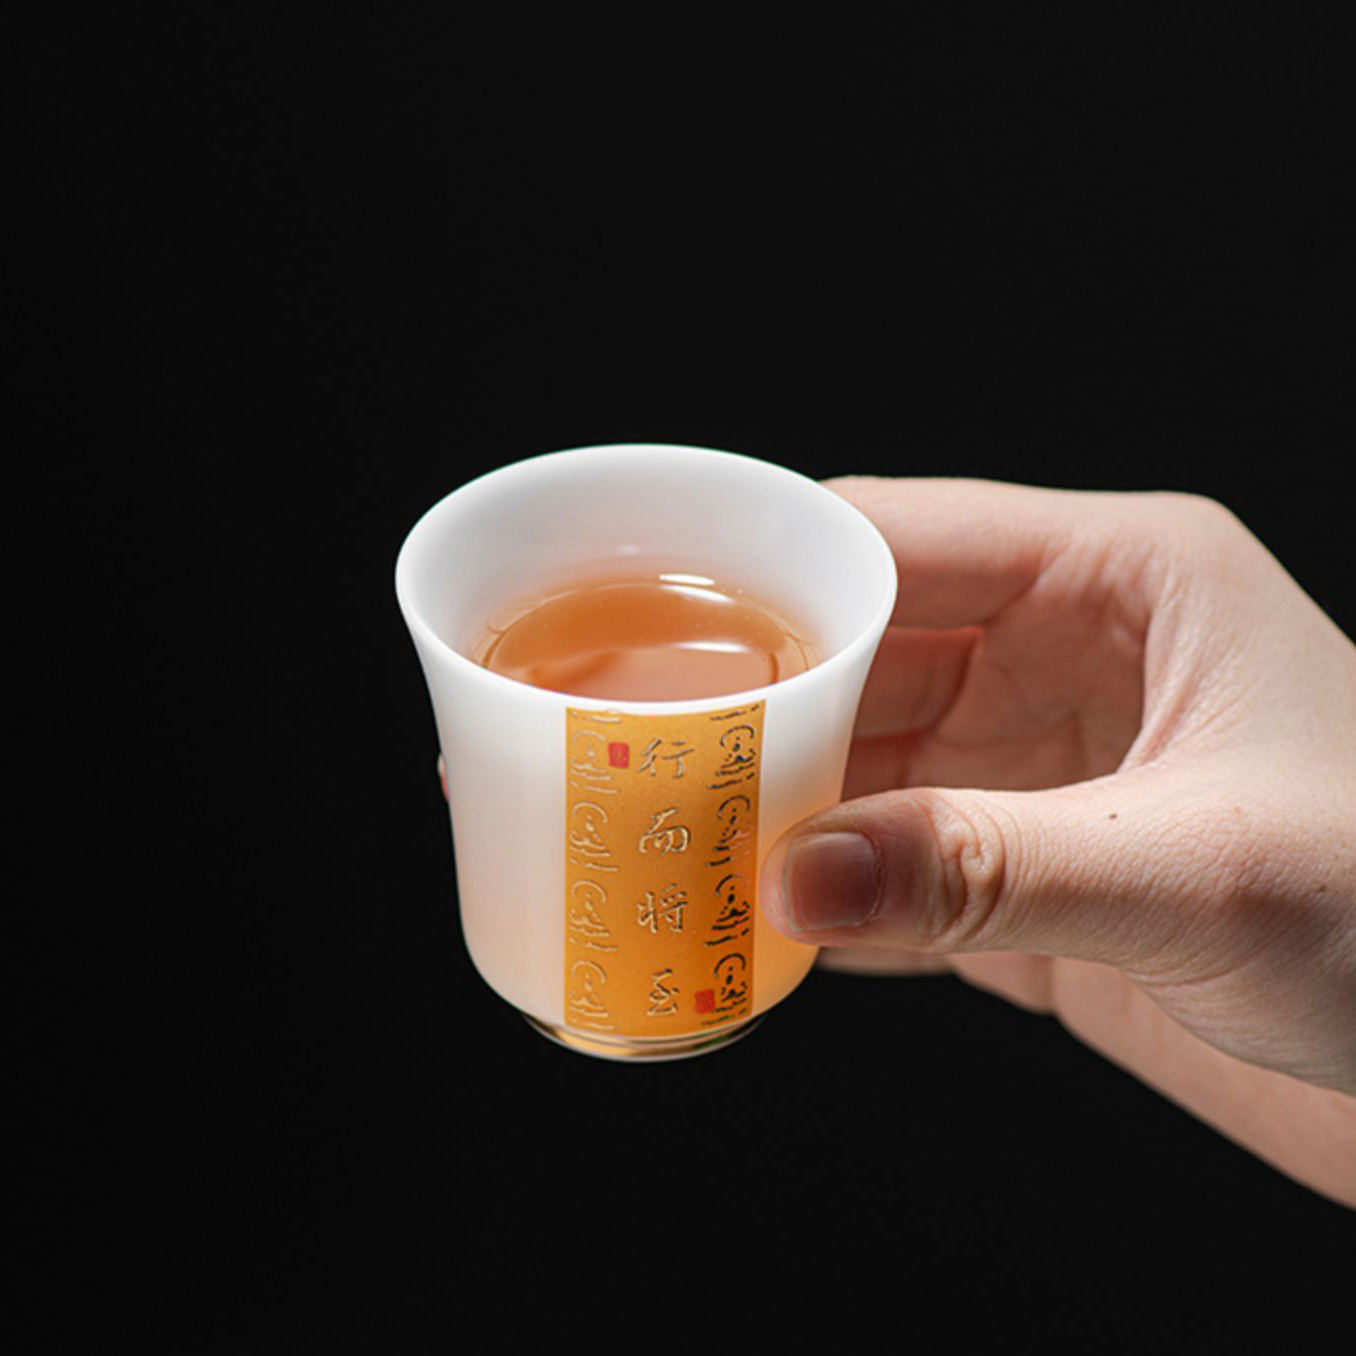 主人杯单杯茶具羊脂玉冰种玉瓷品茗杯德化白瓷茶杯子高端轻奢礼品